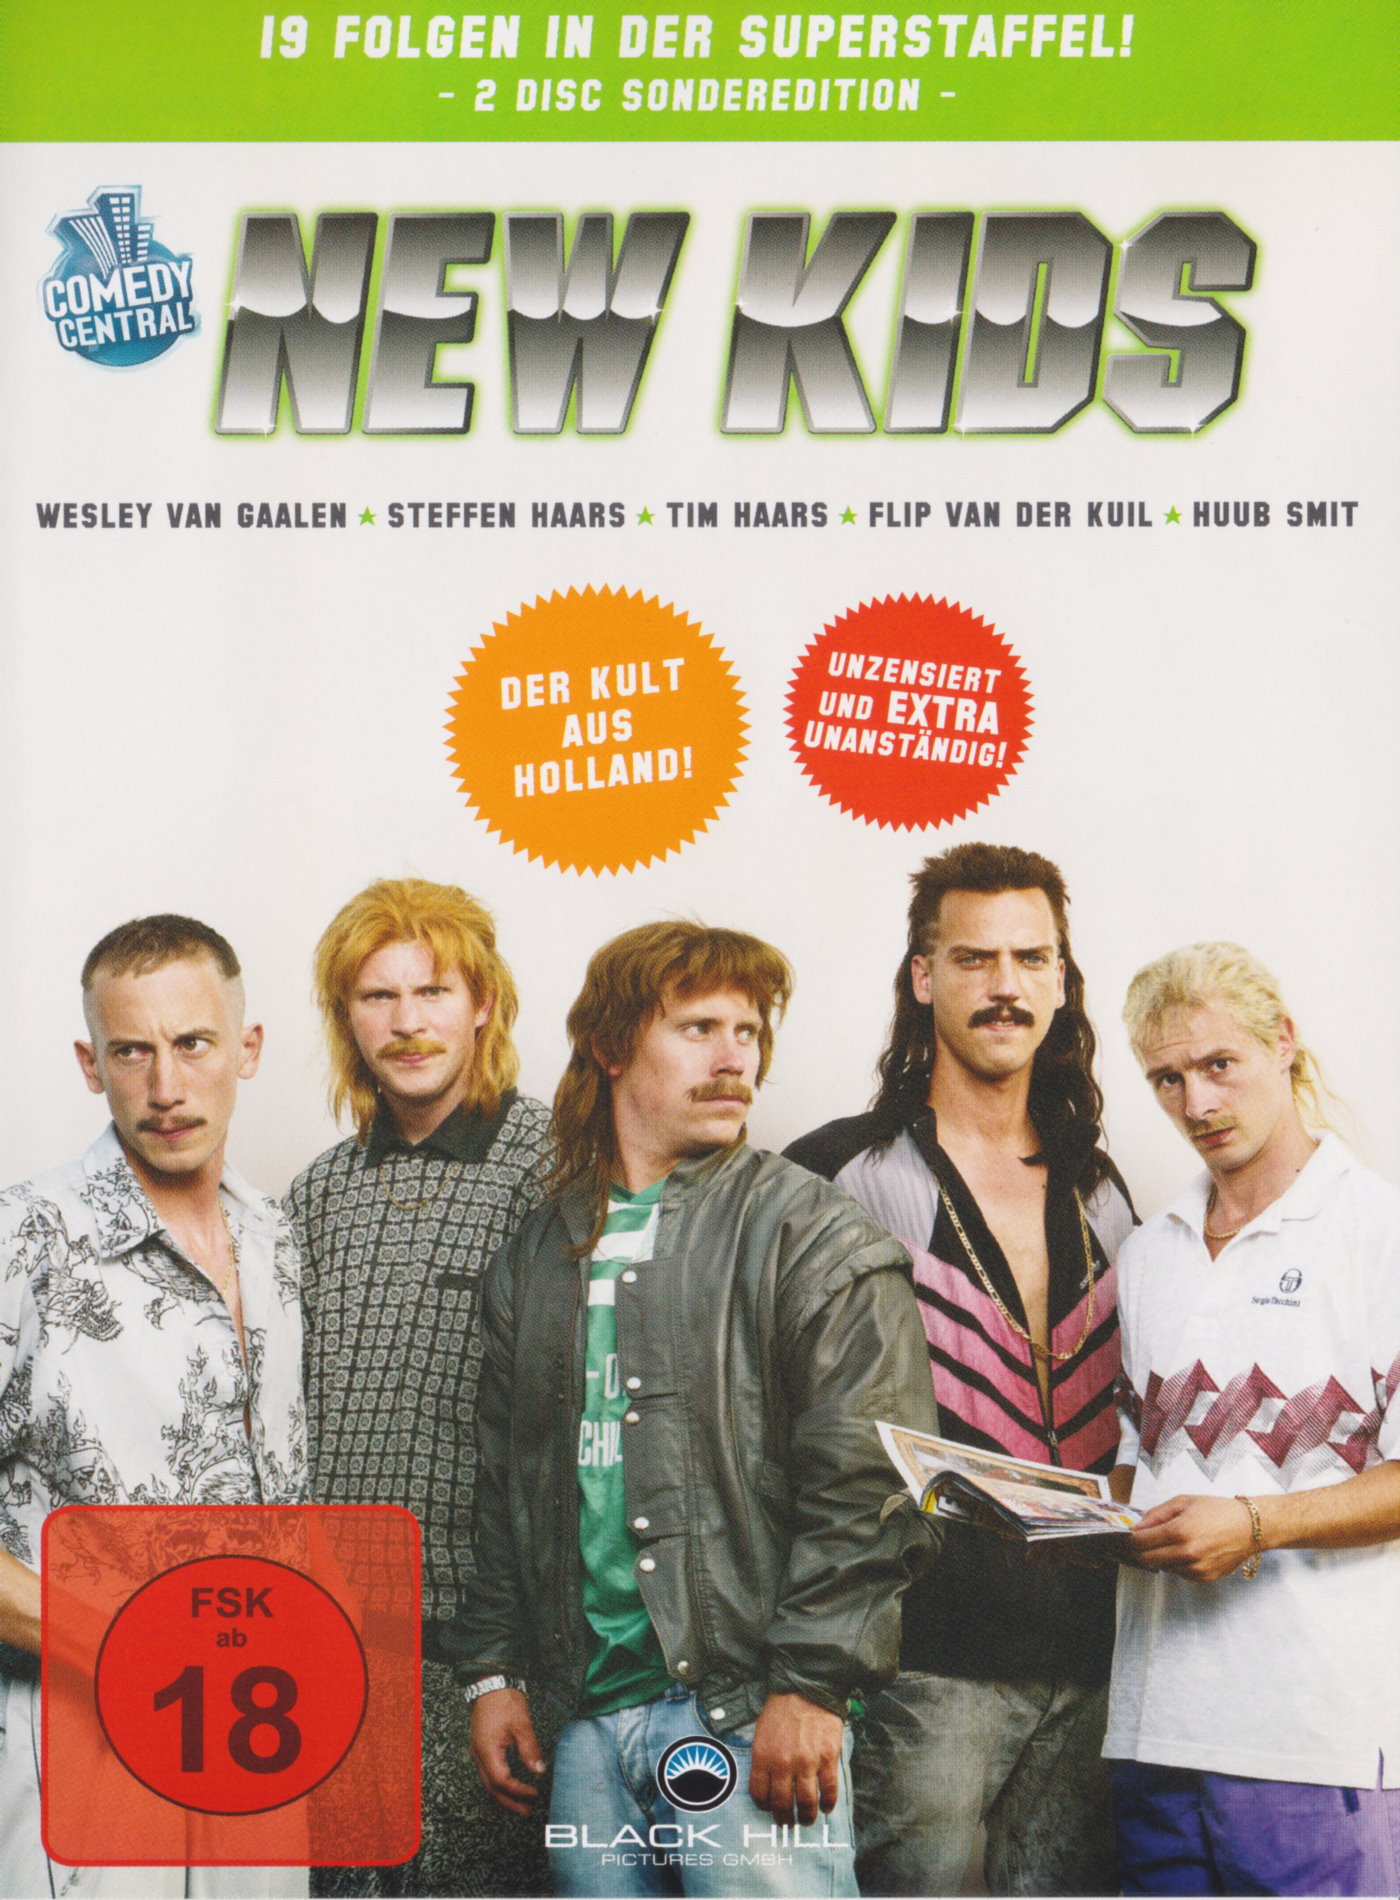 Cover - New Kids.jpg